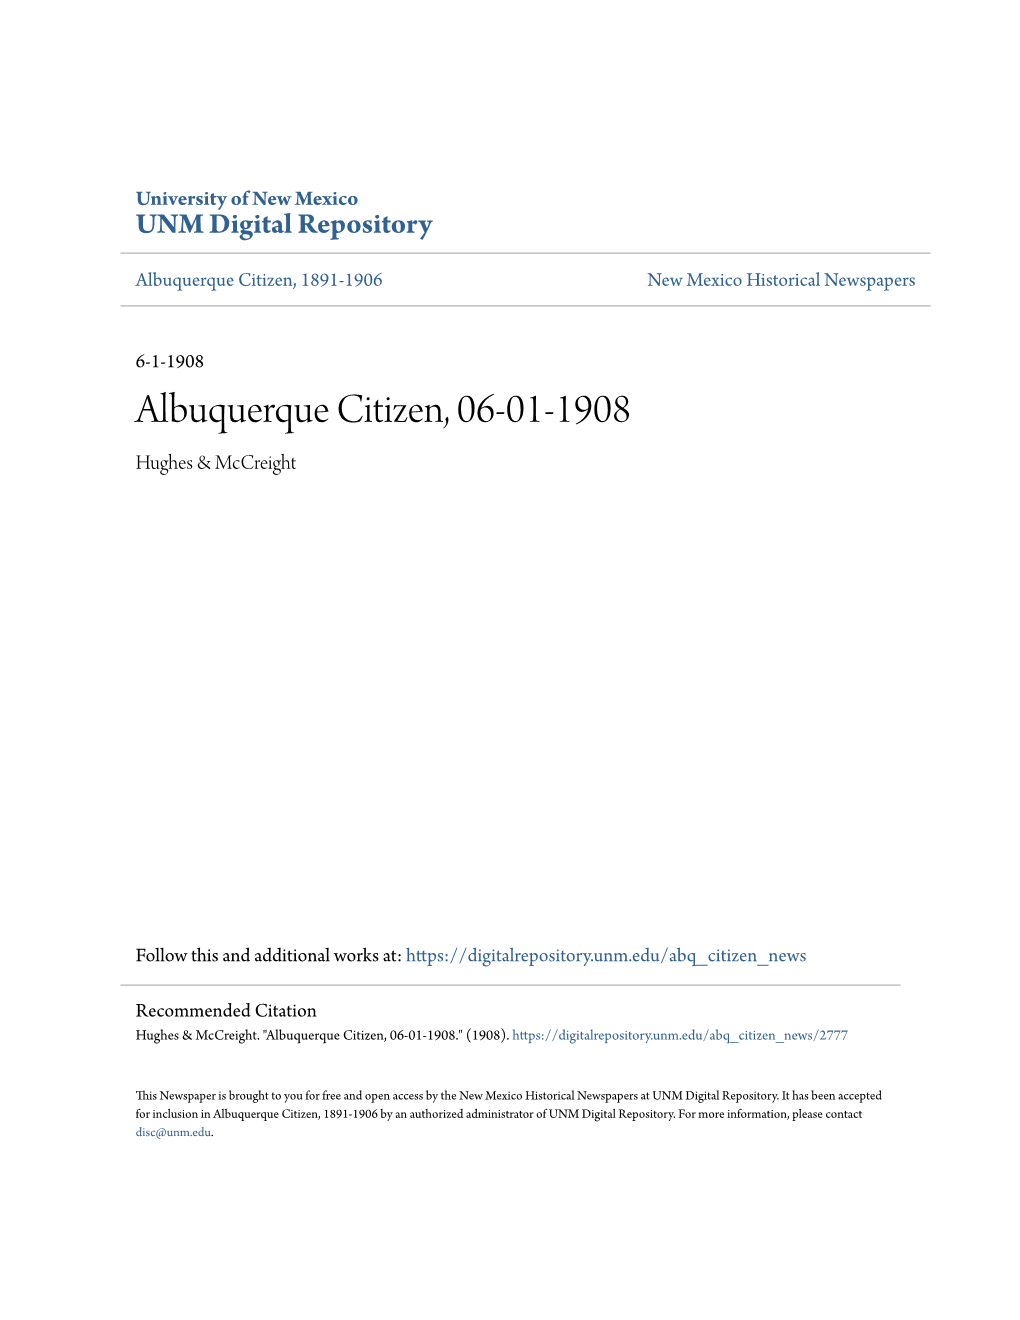 Albuquerque Citizen, 06-01-1908 Hughes & Mccreight